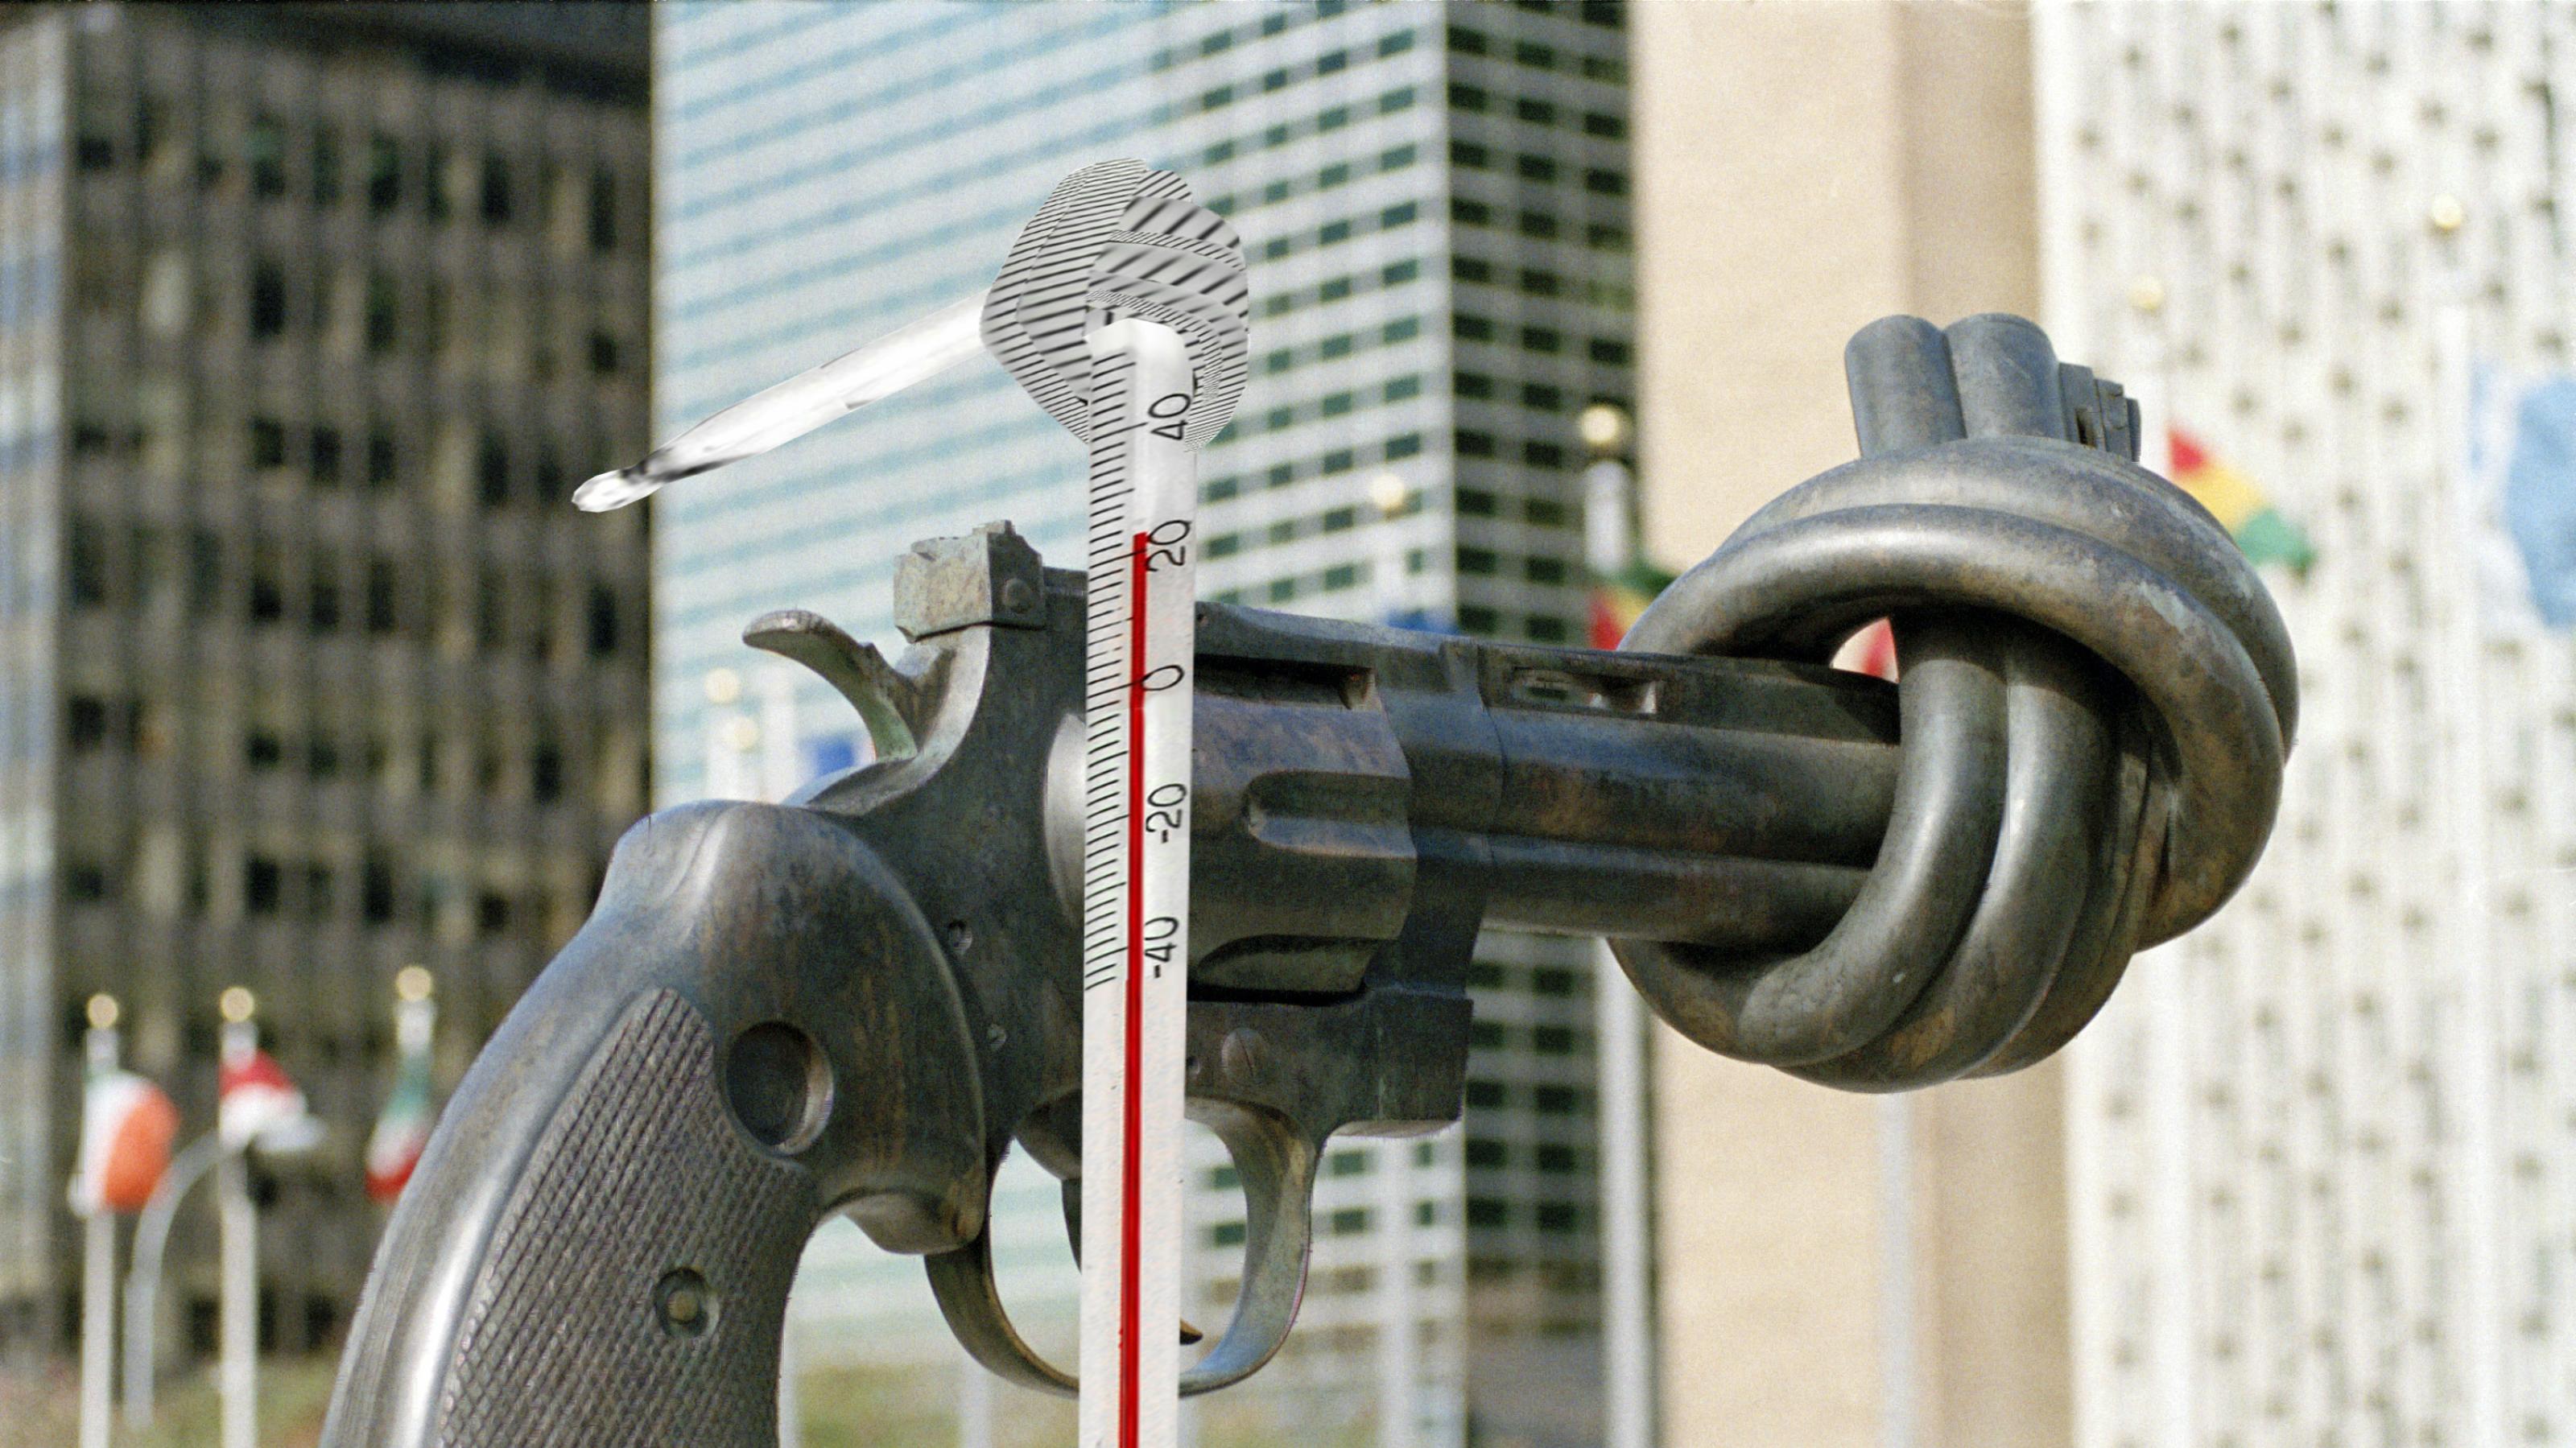 Eine Collage auf der Basis eines Fotos, das vor dem Hauptquartier dr Vereinten Nationen in New York aufgenommen wurde. Darauf wurde die Grafik eines verknoteten Thermometers appliziert. – 
Der Revolver mit dem Knoten im Lauf ist ein Wahrzeichen vor dem UN-Gebäude in Manhattan. Steht dort bald auch die Statue eines Thermometers mit einen Knoten?